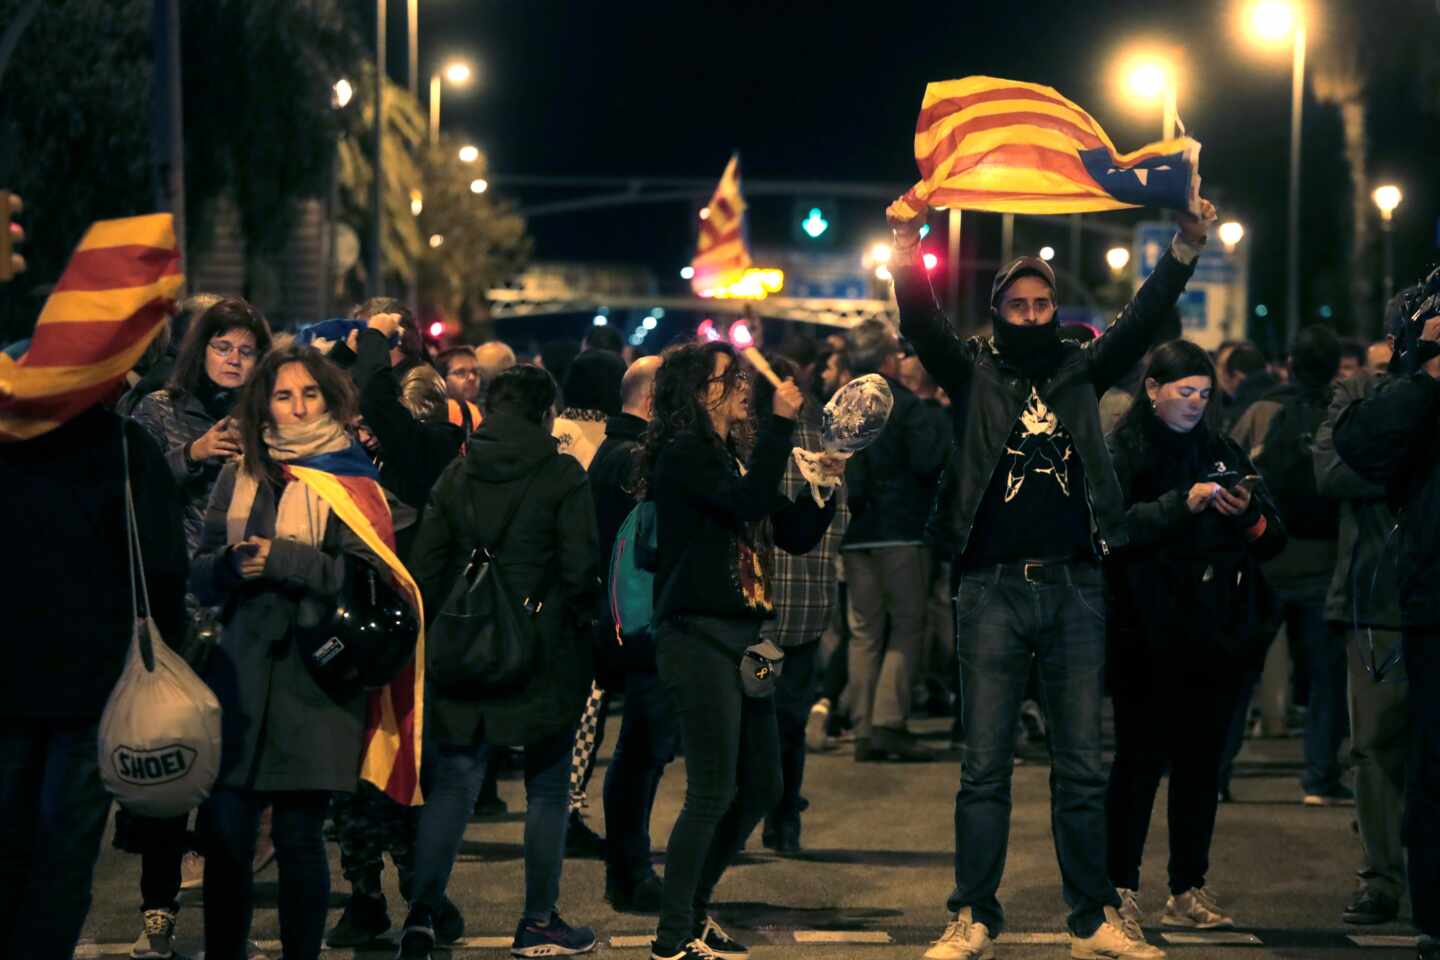 Radicales convocados por los CDR para protestar por la visita del rey a Barcelona en 2019.